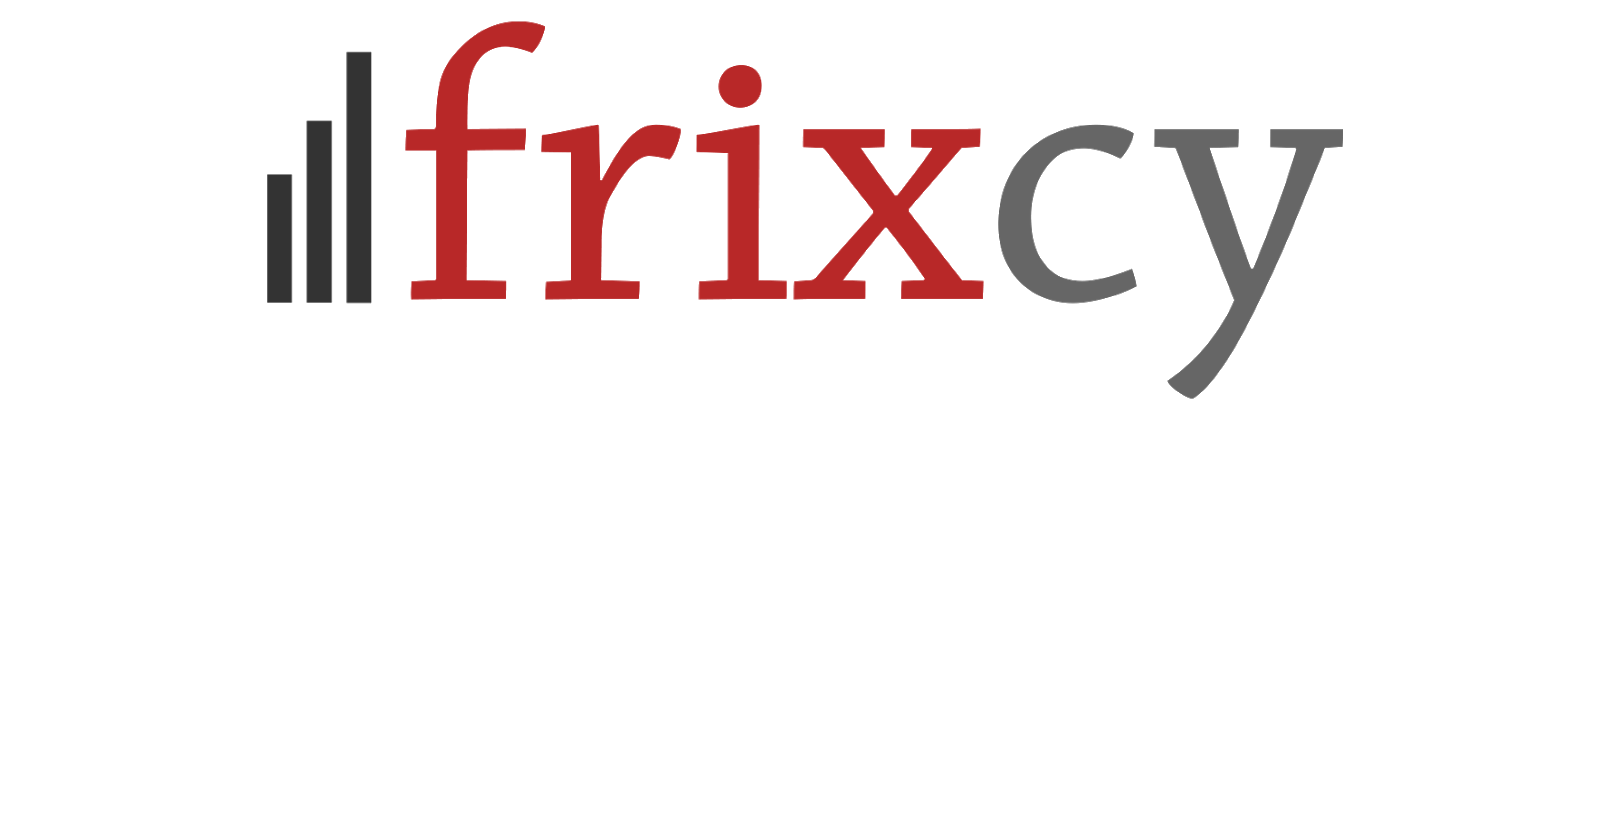 Frixcy